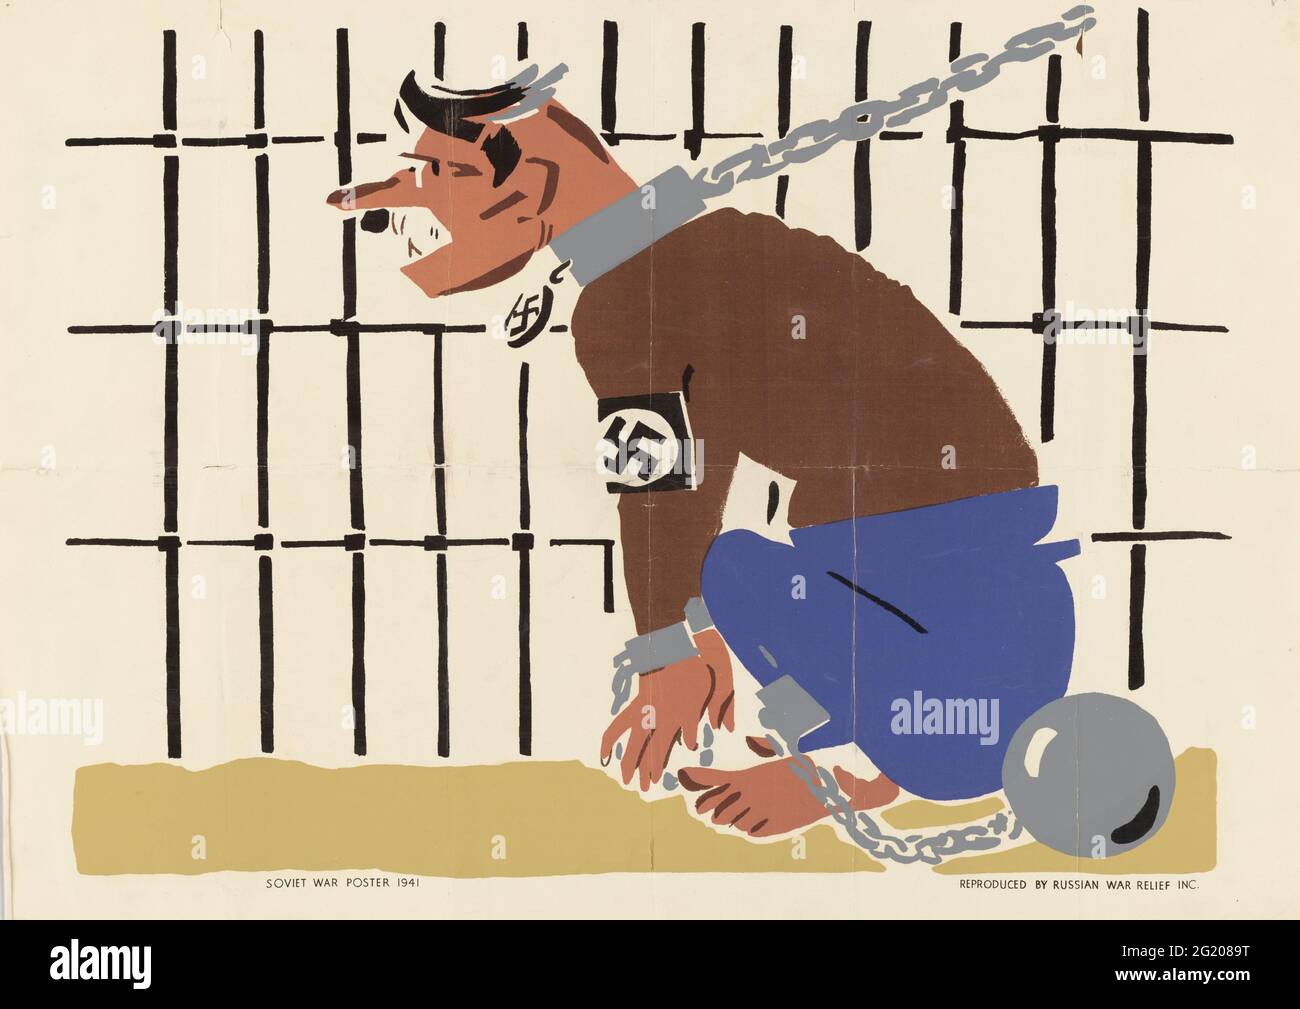 Sowjetisches Plakat zum Zweiten Weltkrieg, das Adolf Hitler und den Nationalsozialismus als verketteten Hund zeigt, Sowjetunion, 1941. (Fotomechanischer Druck von Russian war Relief, Inc./Office of war Information/RBM Vintage Images) Stockfoto